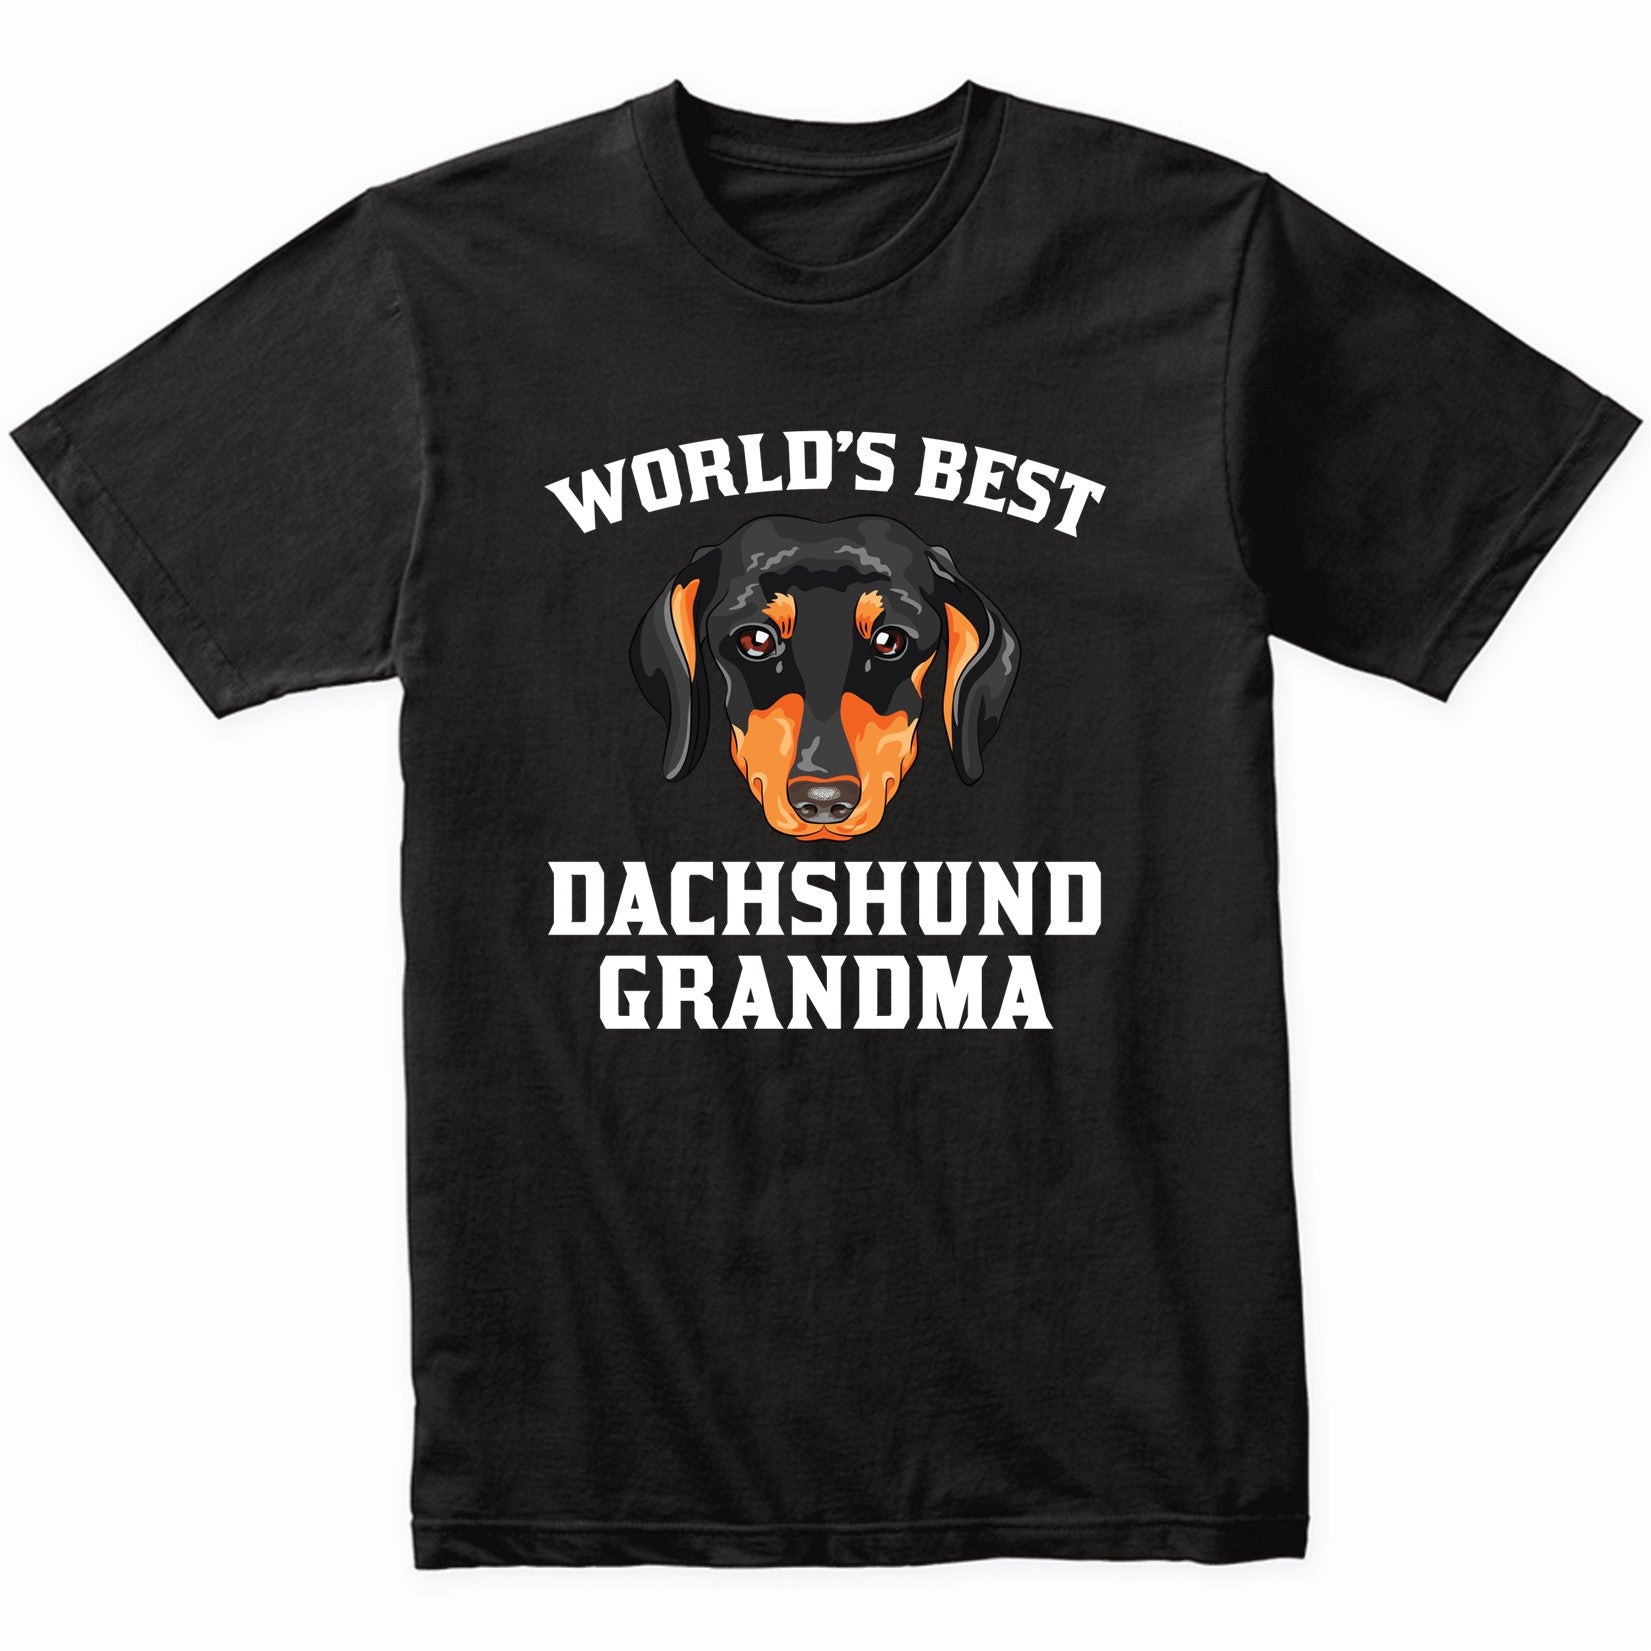 World's Best Dachshund Grandma Dog Graphic T-Shirt